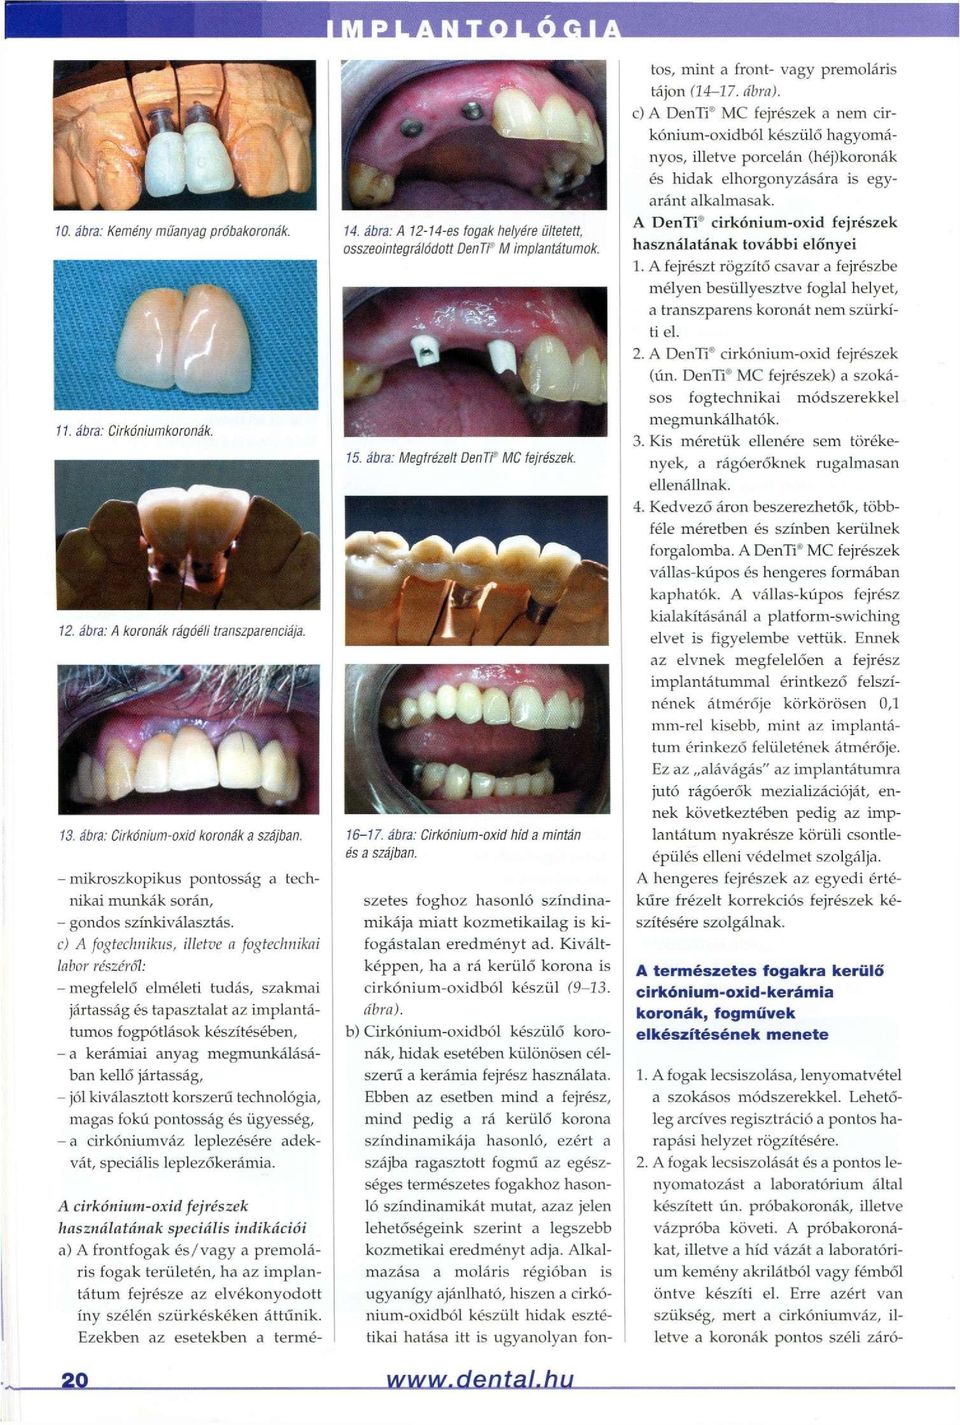 c) A fogtechnikus, illetve a fogtechnikai labor részéről: - megfelelő elméleti tudás, szakmai jártasság és tapasztalat az implantátumos fogpótlások készítésében, - a kerámiai anyag megmunkálásában